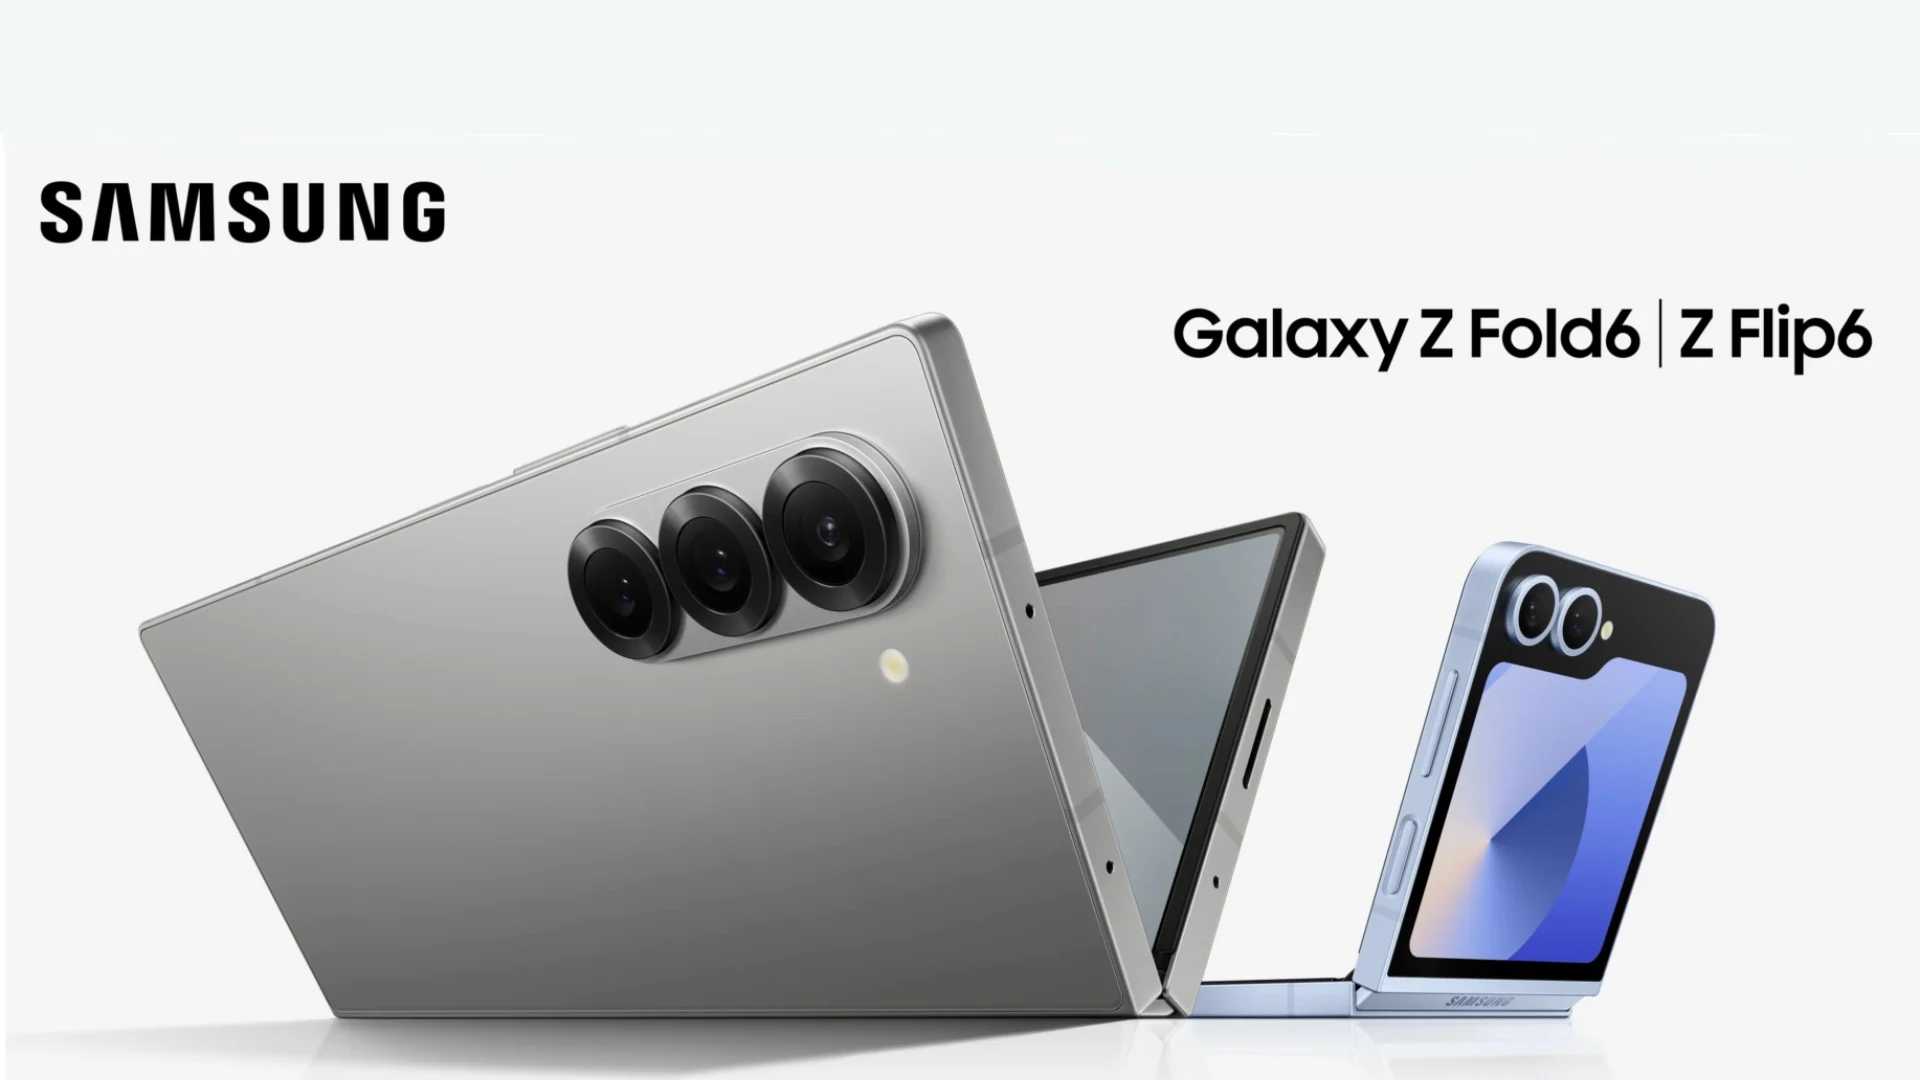 Samsung otrzymał mniej zamówień przedpremierowych na nowe składane smartfony Galaxy Fold 6 i Flip 6 w porównaniu do Fold 5 i Flip 5 w zeszłym roku